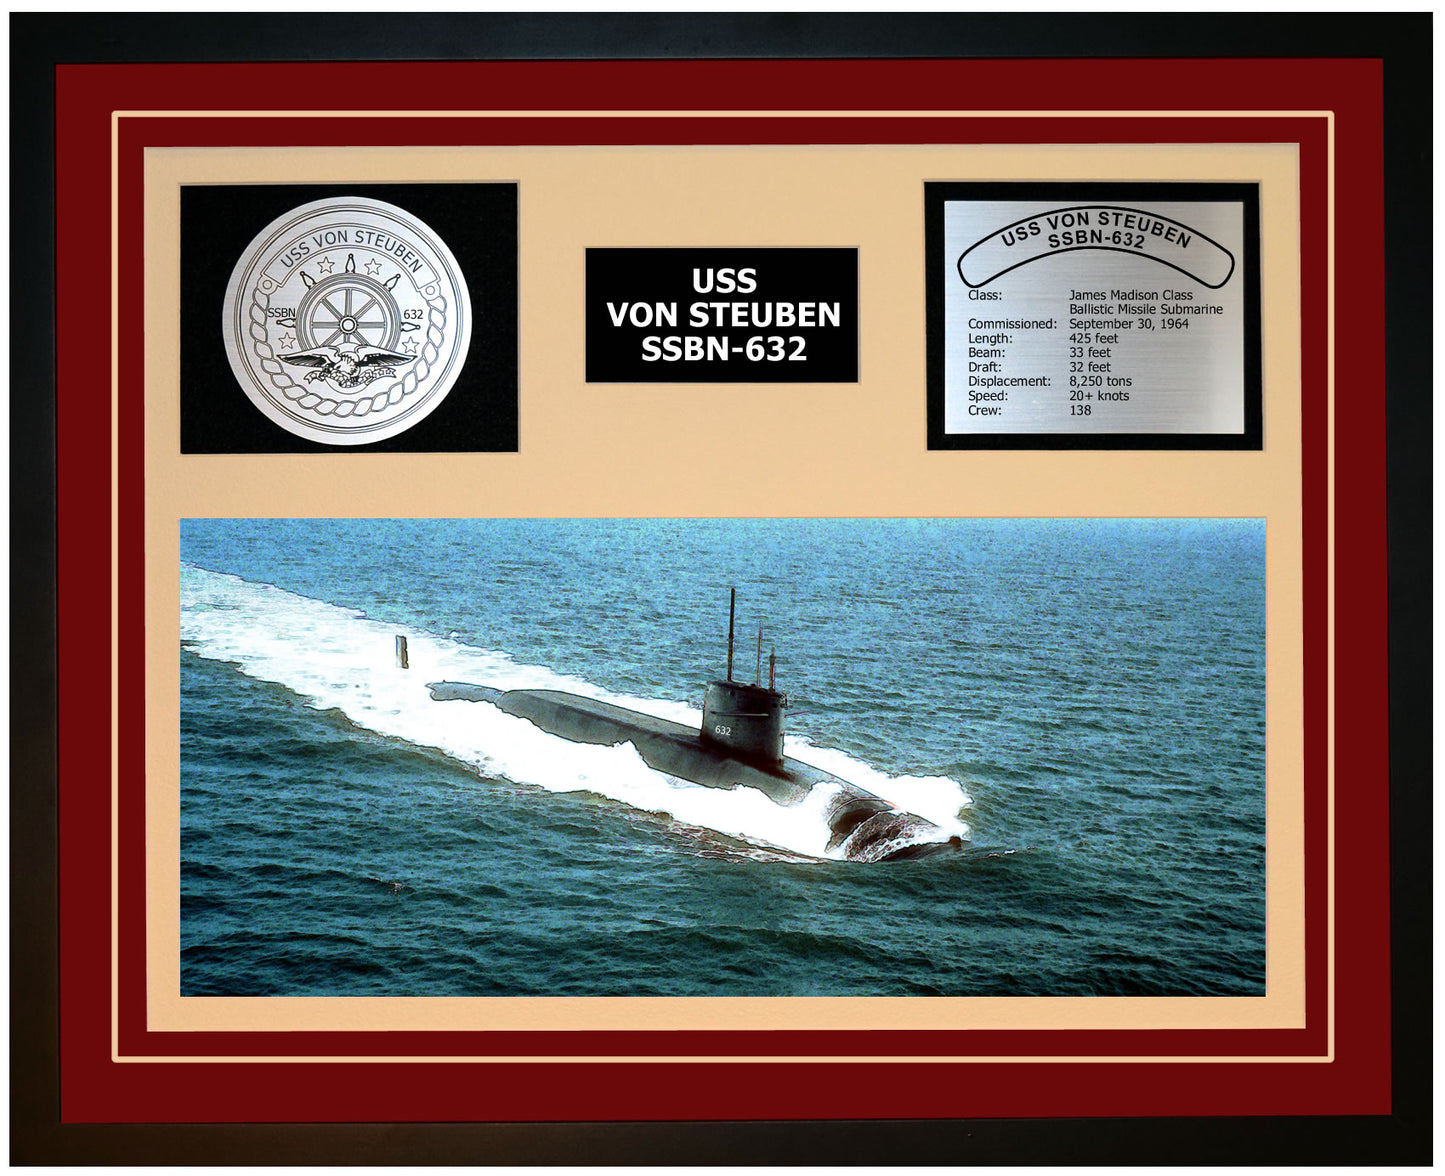 USS VON STEUBEN SSBN-632 Framed Navy Ship Display Burgundy